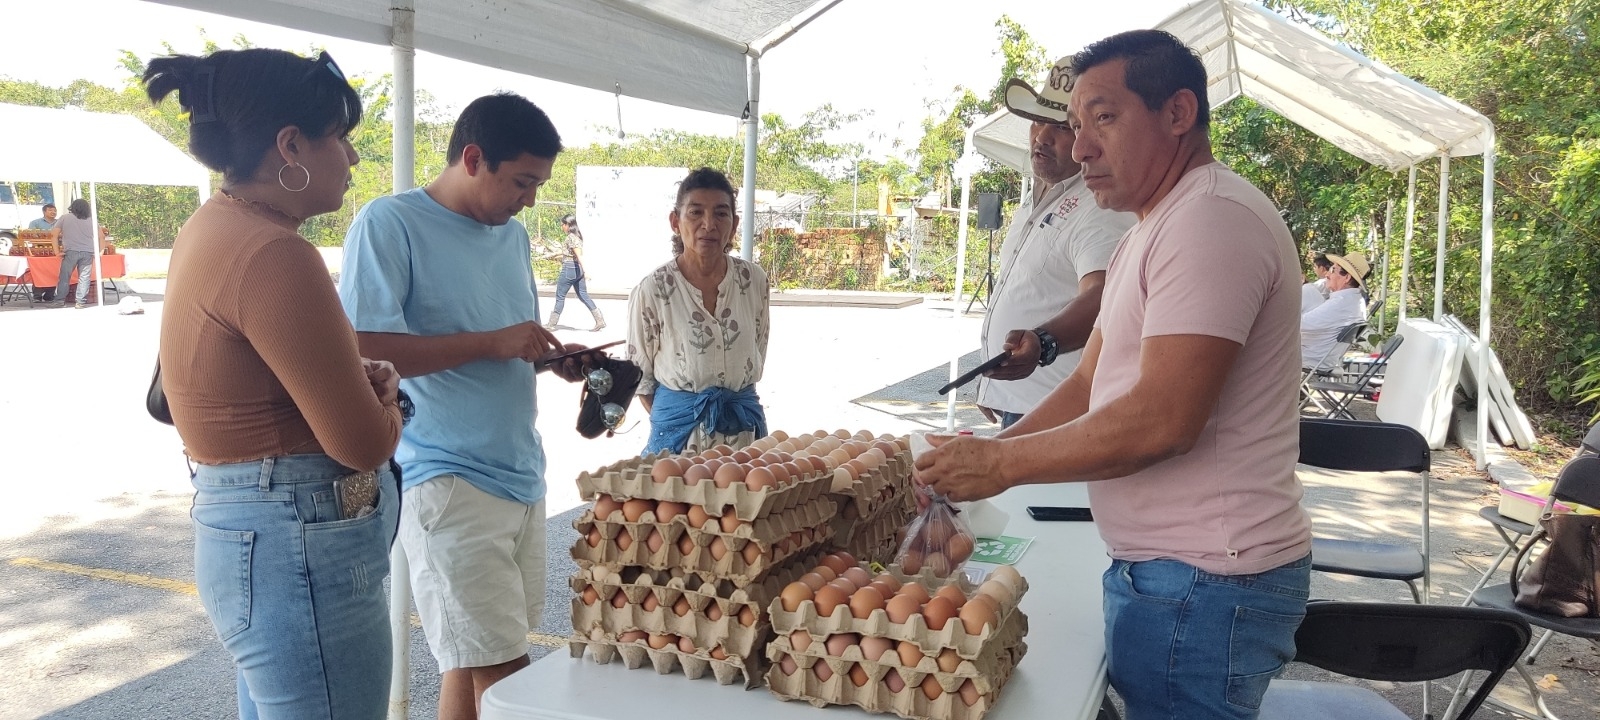 Gripe aviar causa aumento en el precio del huevo en Playa del Carmen